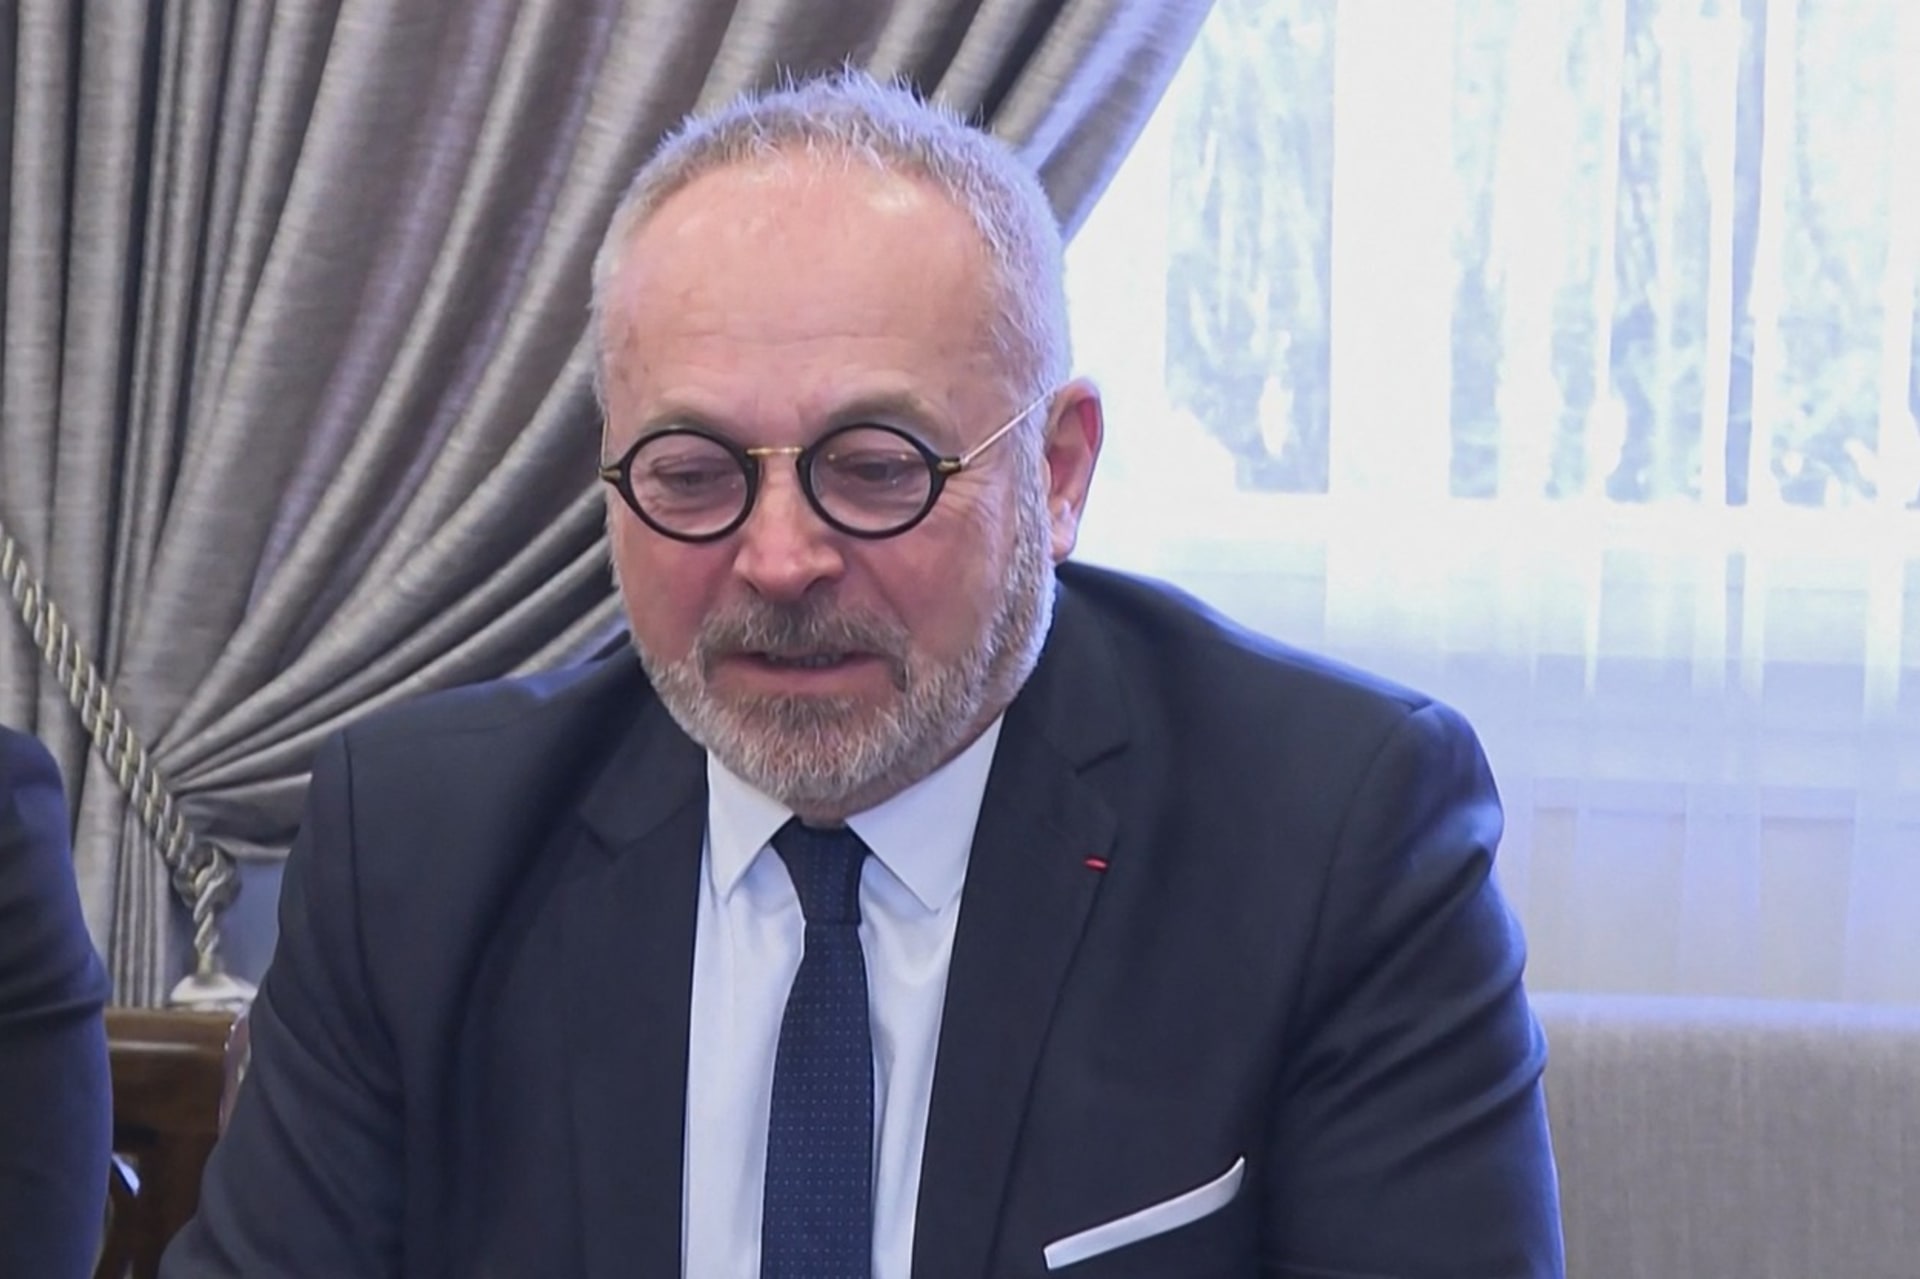 SenátorJoël Guerriau čelí obvinění ze zdrogování kolegyně.